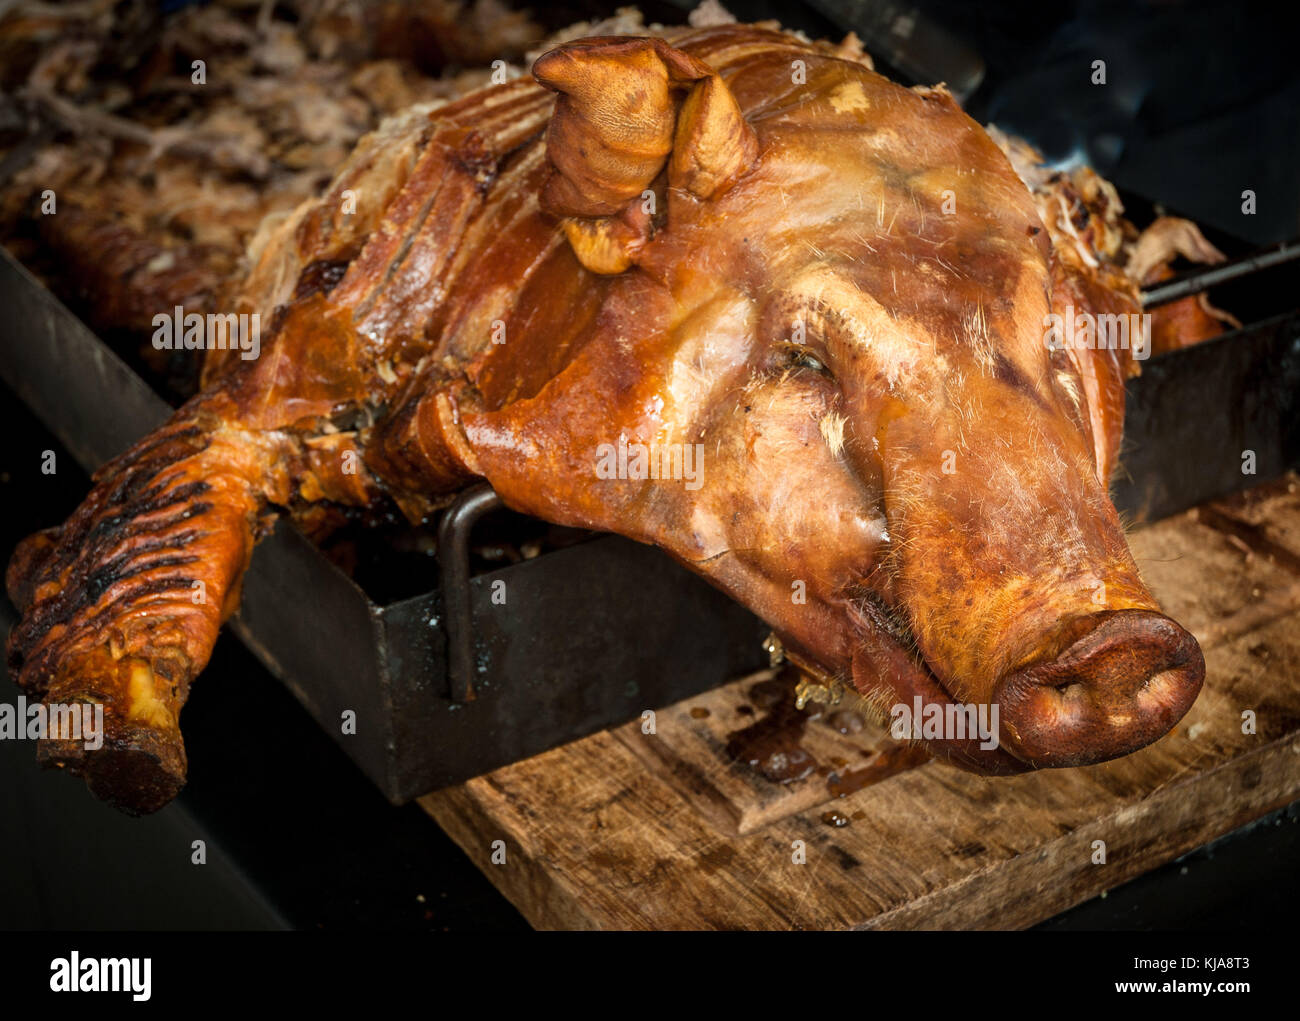 Pig Food Banquet Banque d'image et photos - Alamy